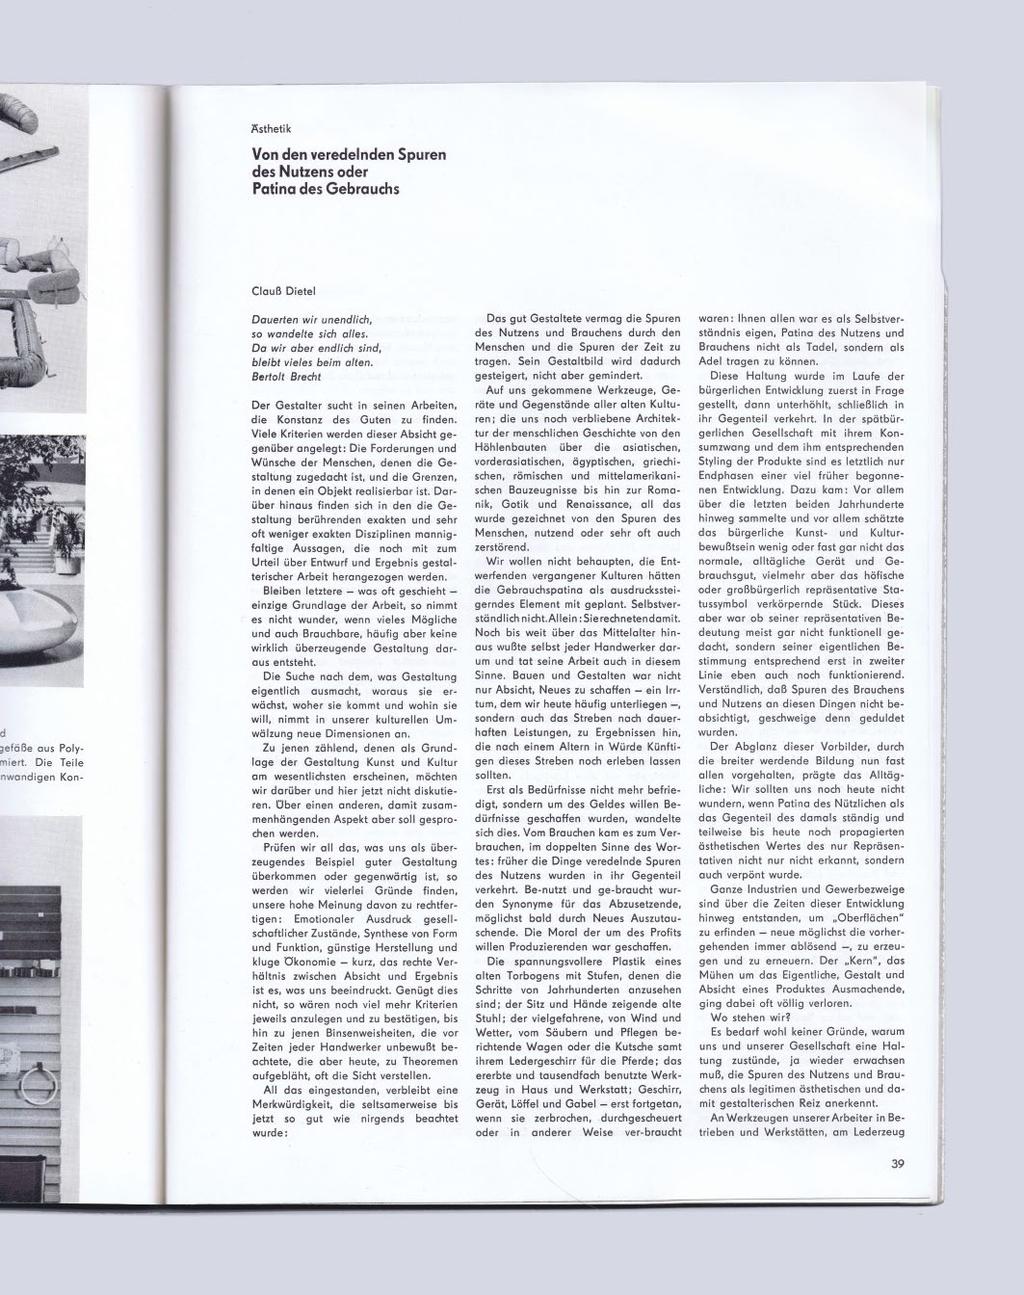 Form und Zweck, 1973, Ausgabe/issue 1, cover: Dietrich Otte Form